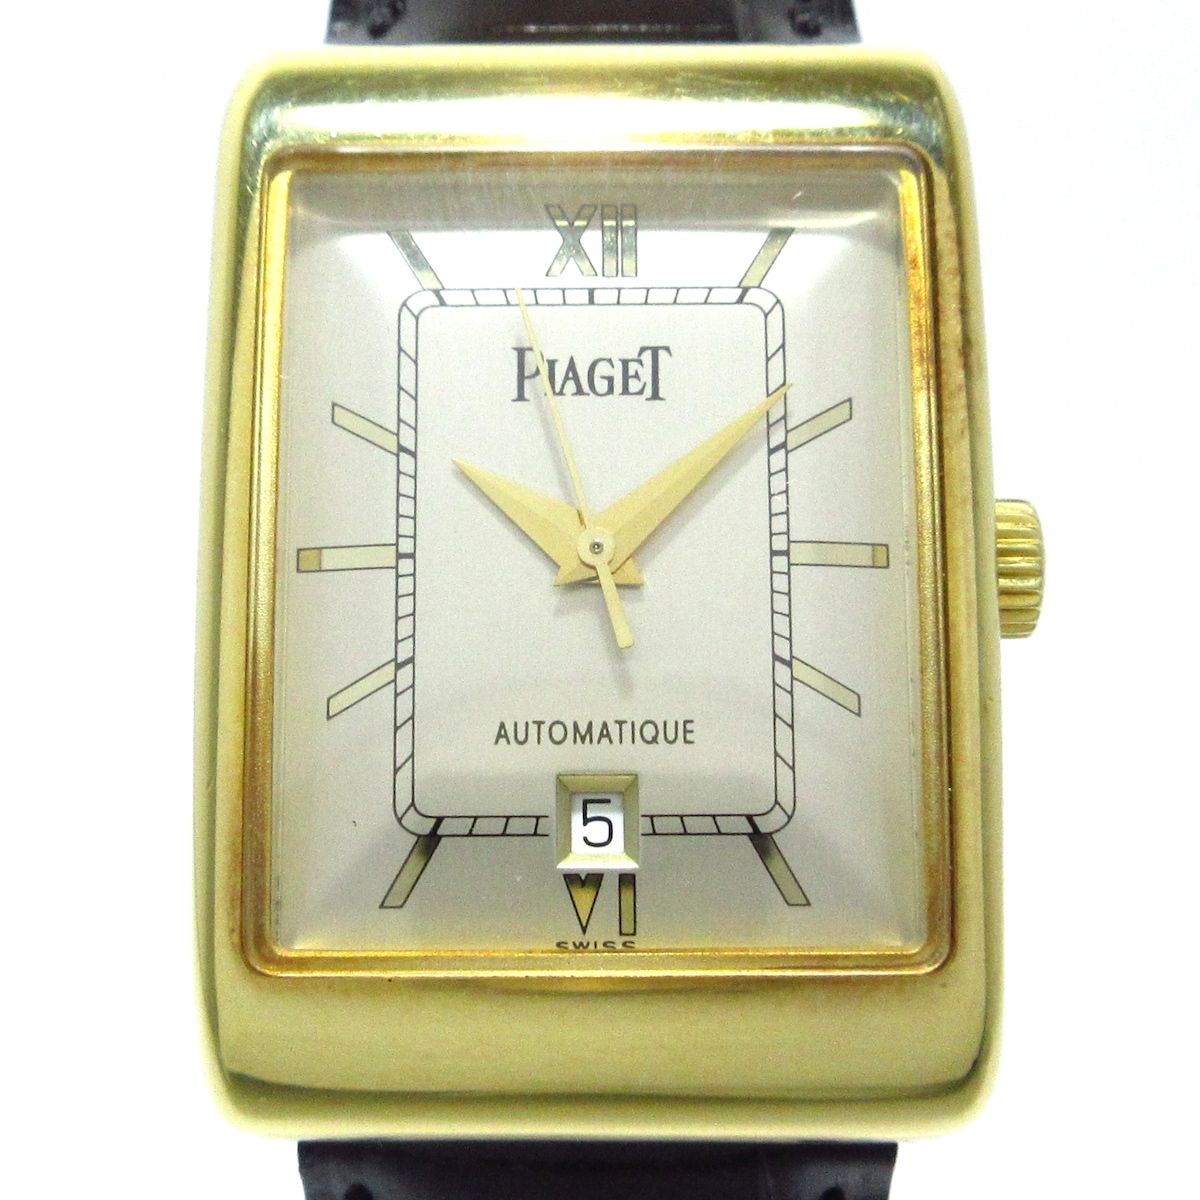 PIAGET(ピアジェ) 腕時計 レクタングル アランシェンヌ 18952 メンズ 